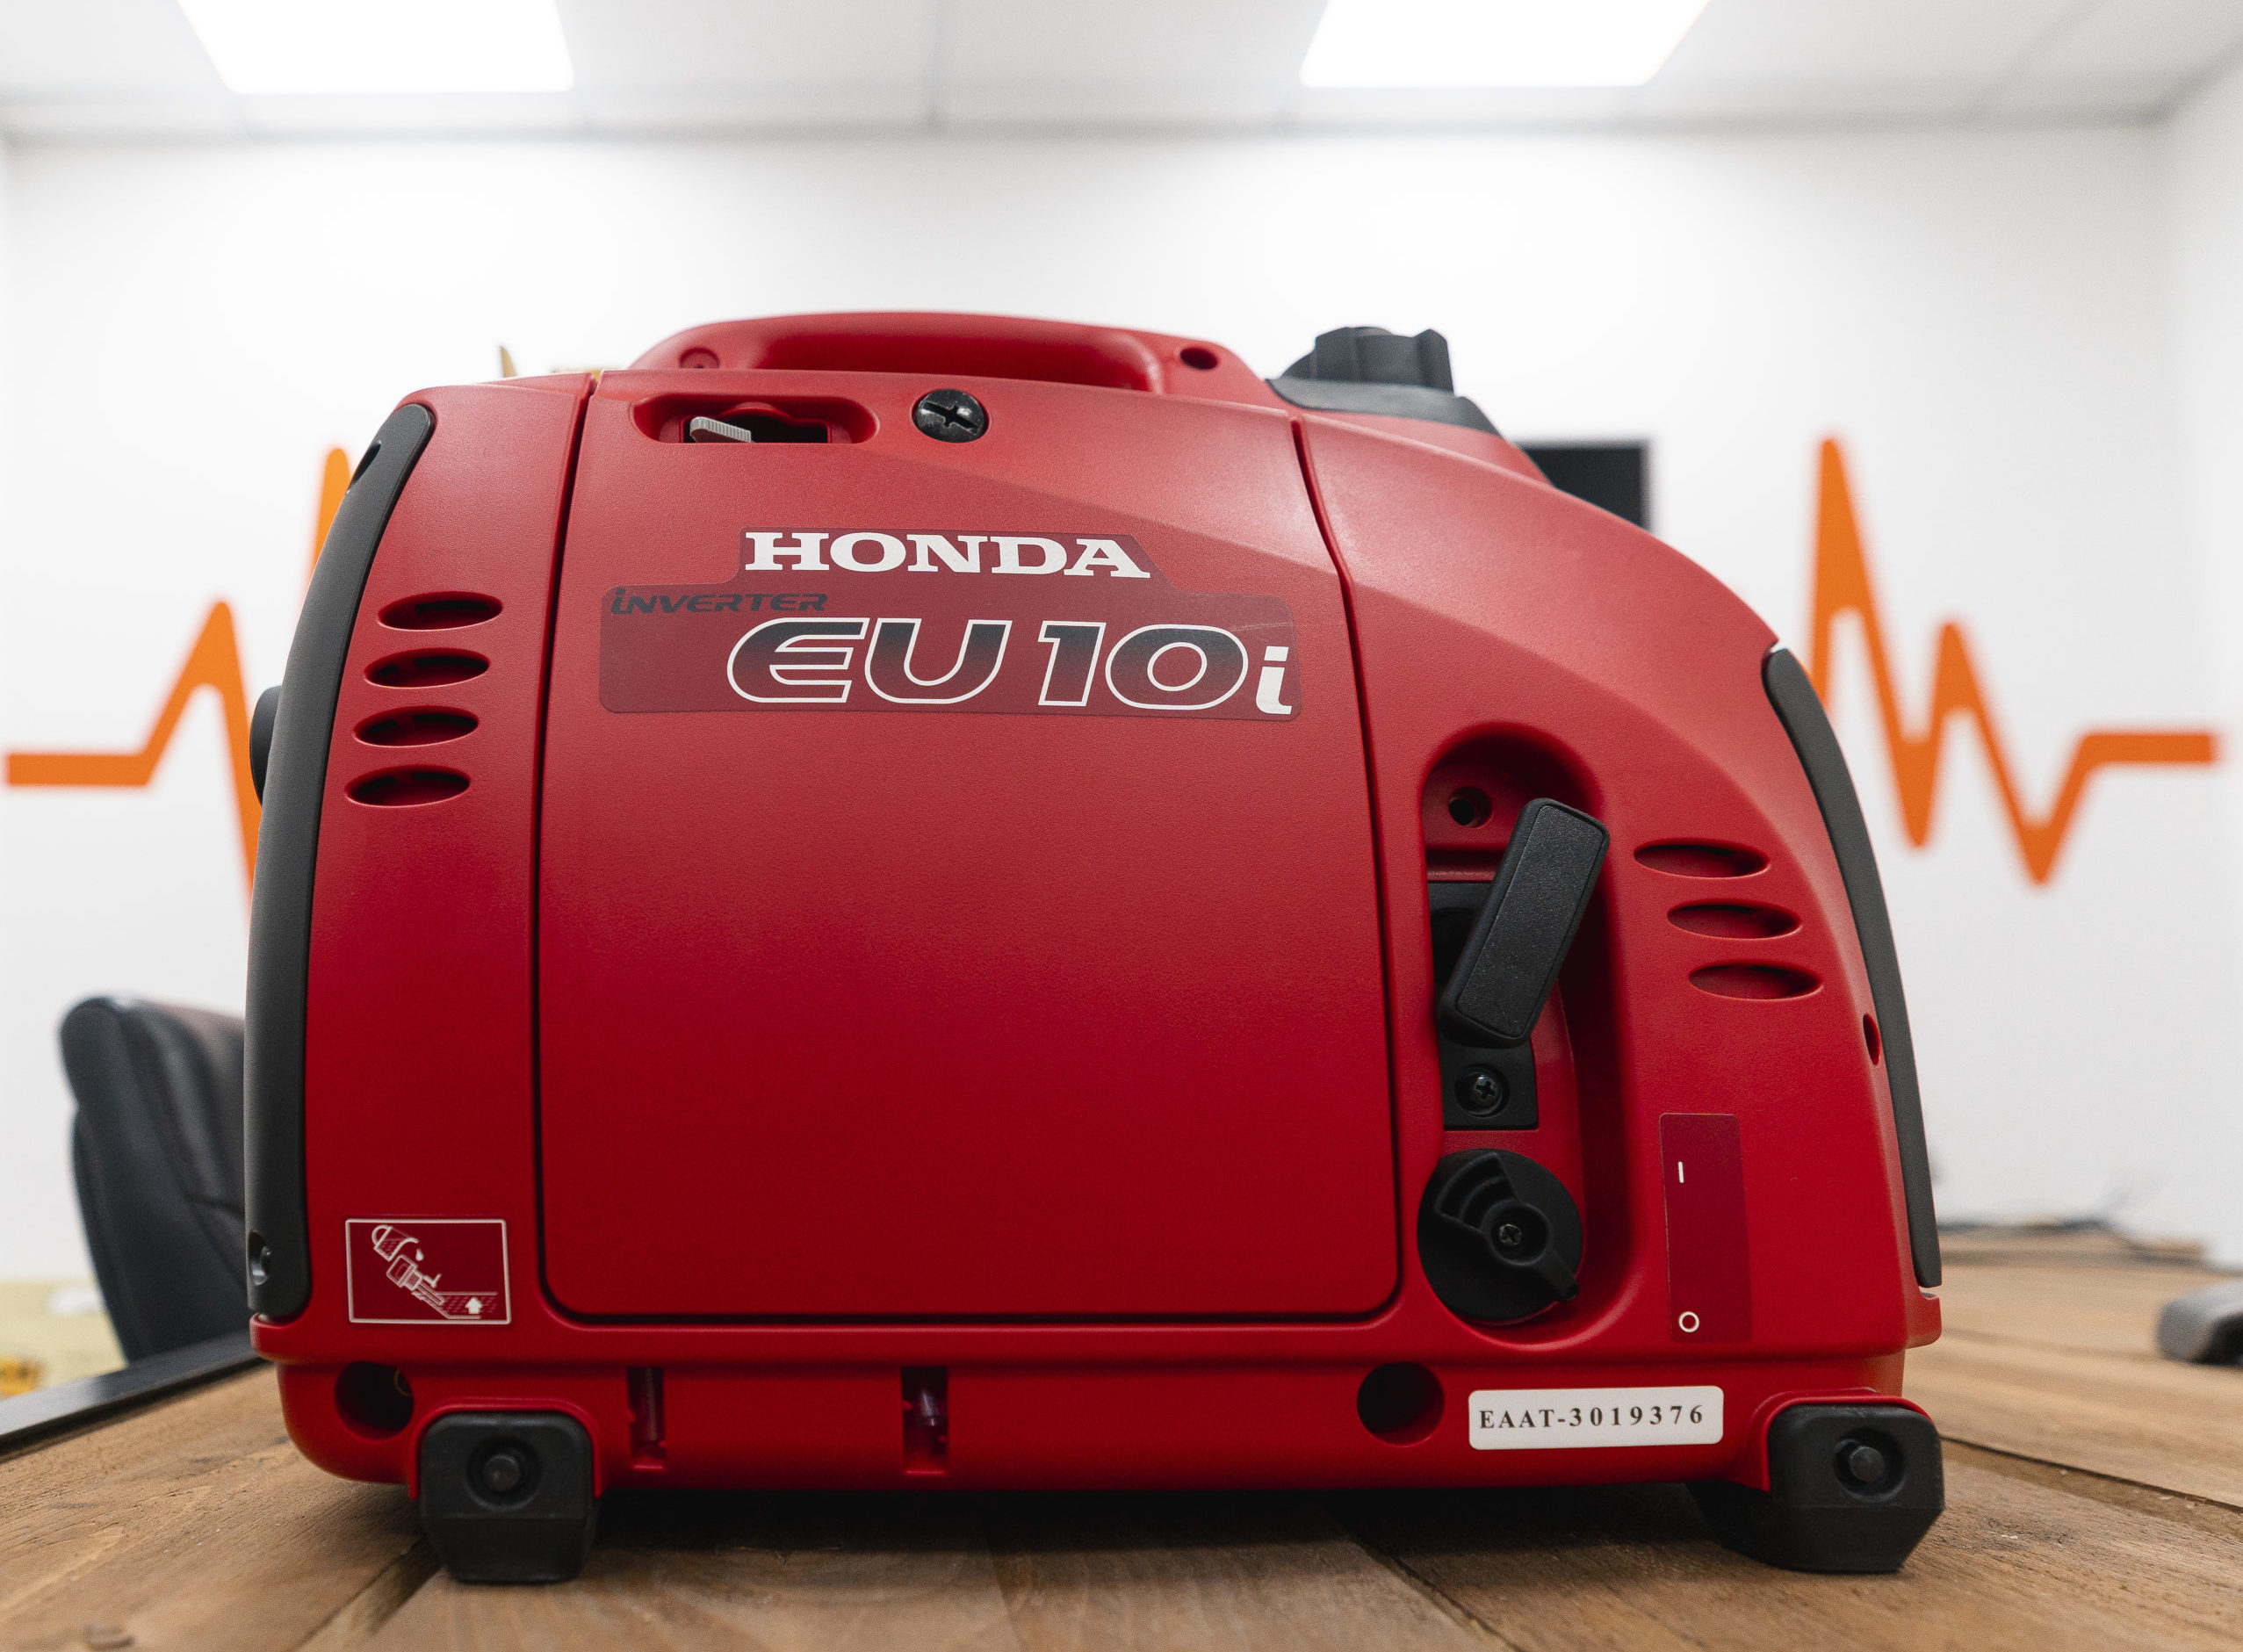 A red EU10i Inverter suitcase Honda Generator